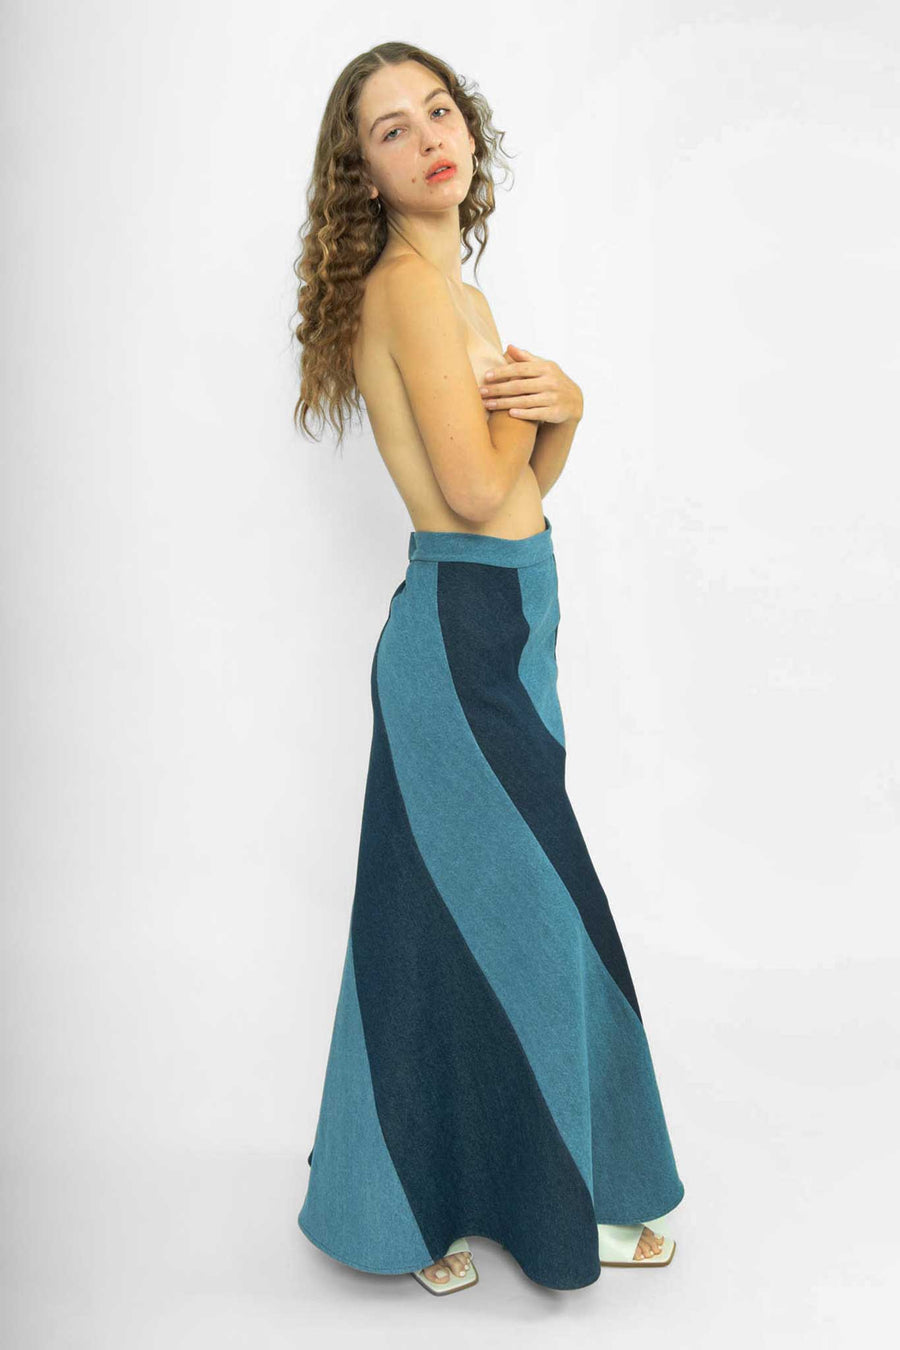 BATSHEVA - Cera Skirt in Blue Denim